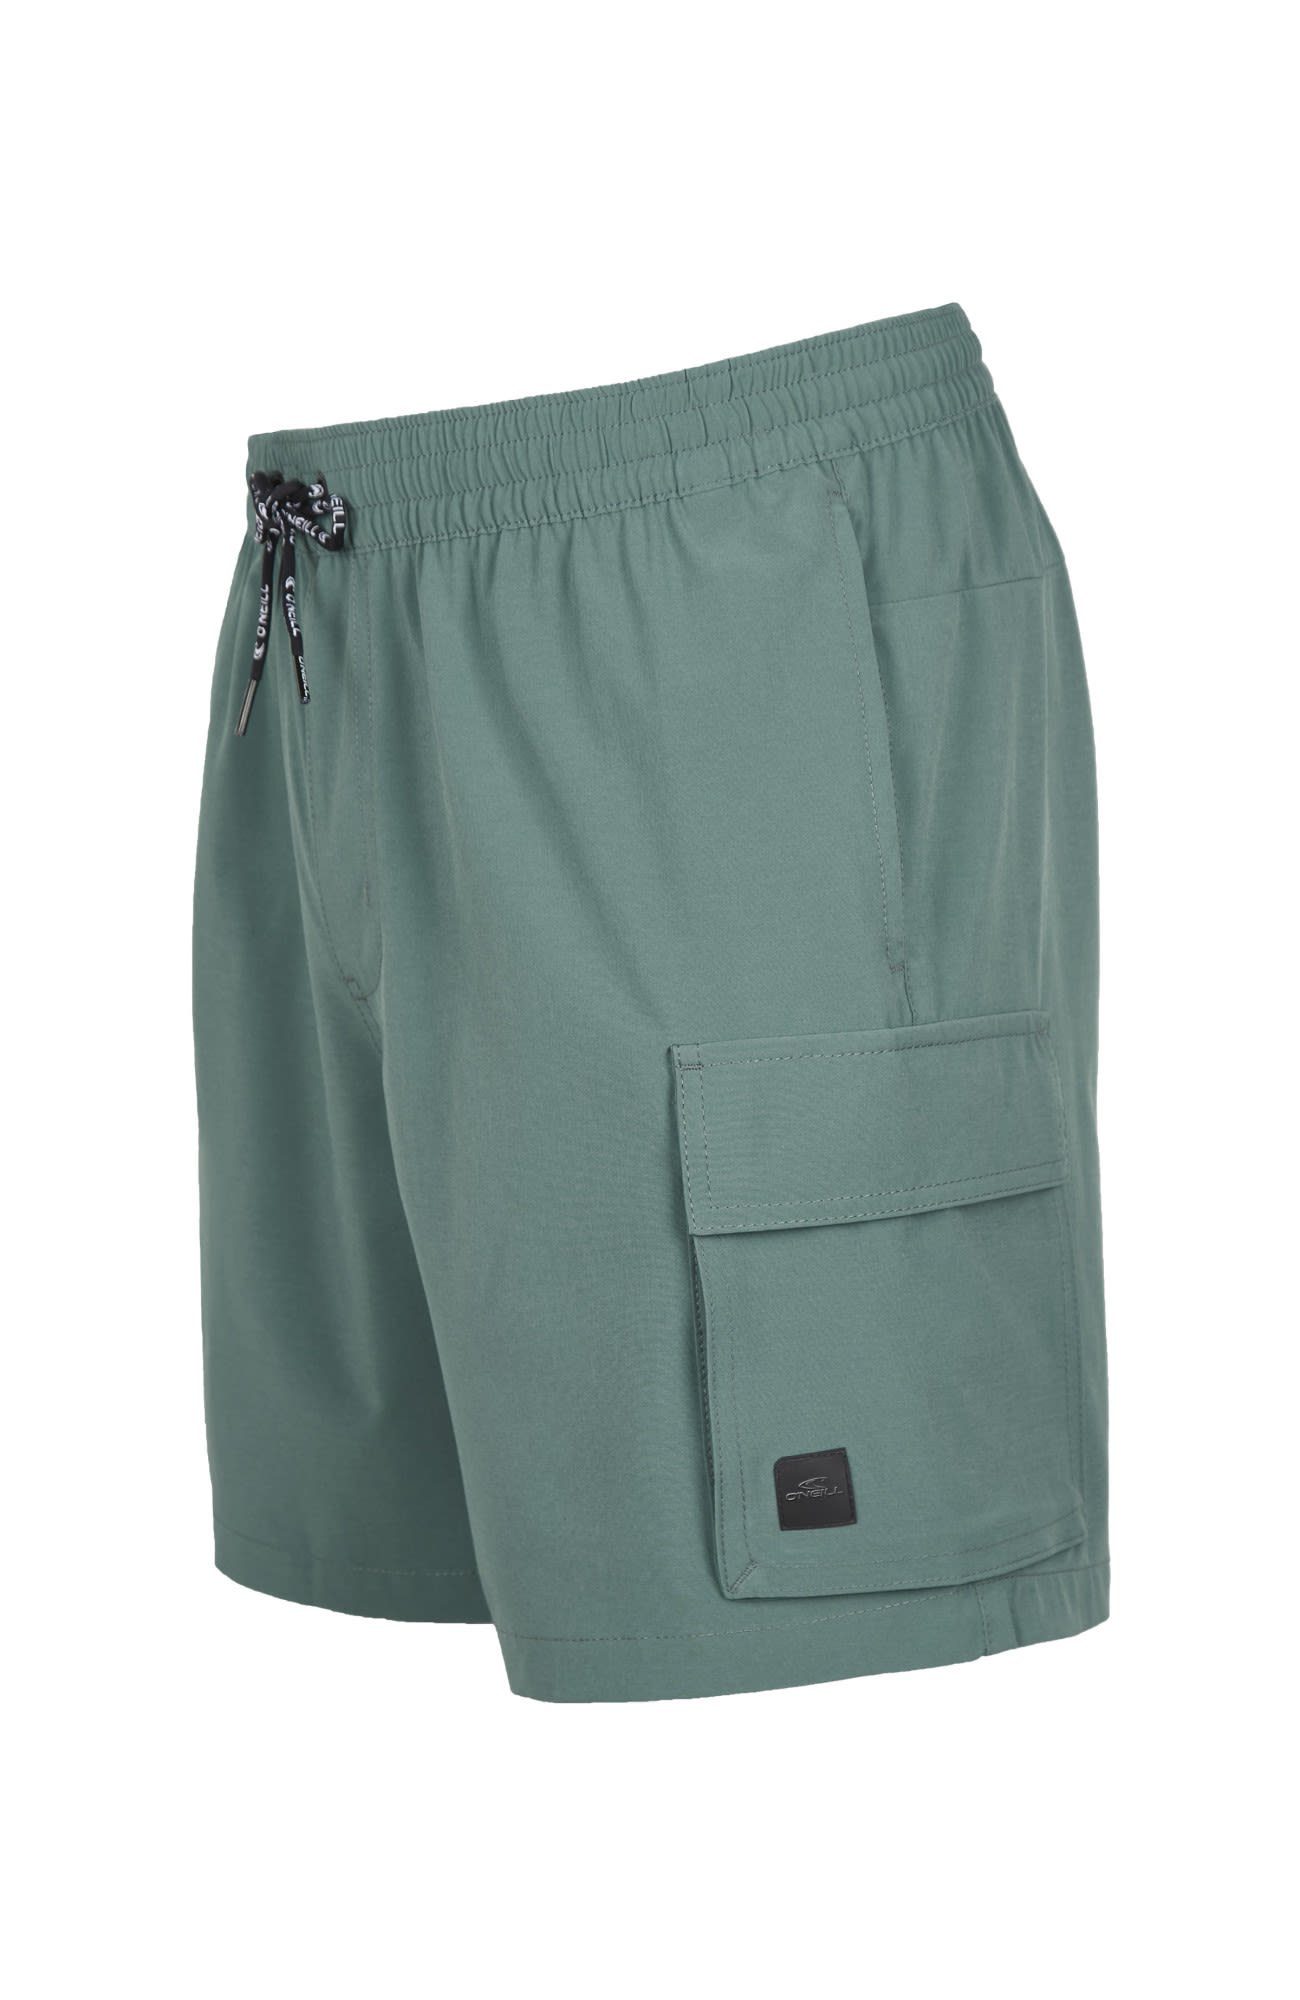 Shorts Shorts North All Strandshorts Hybrid M Atlantic Day Oneill O'Neill 17'' Herren